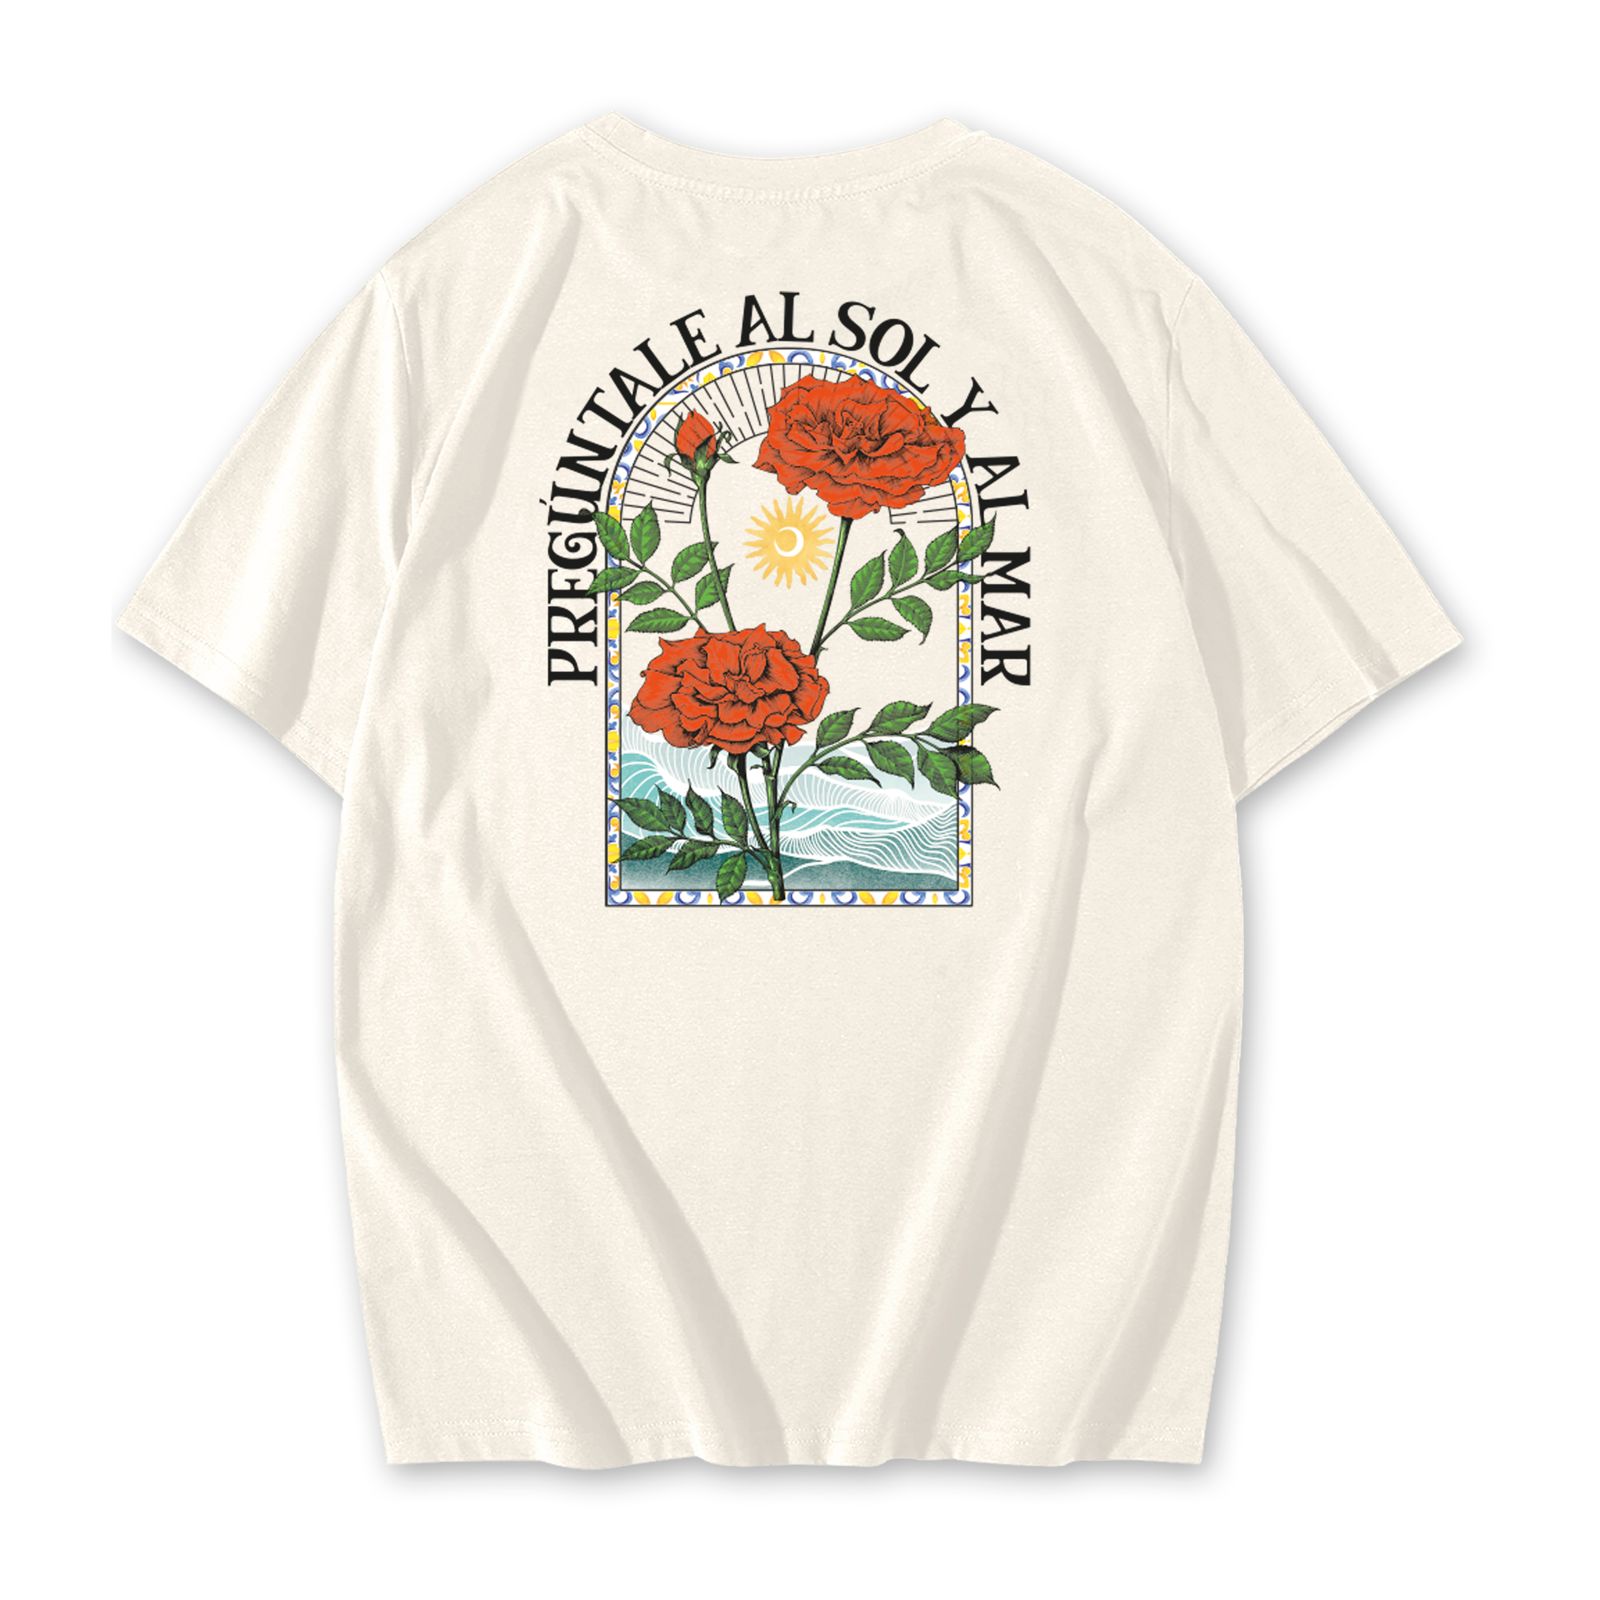 Camiseta con Diseño Pregúntale al Sol y al Mar